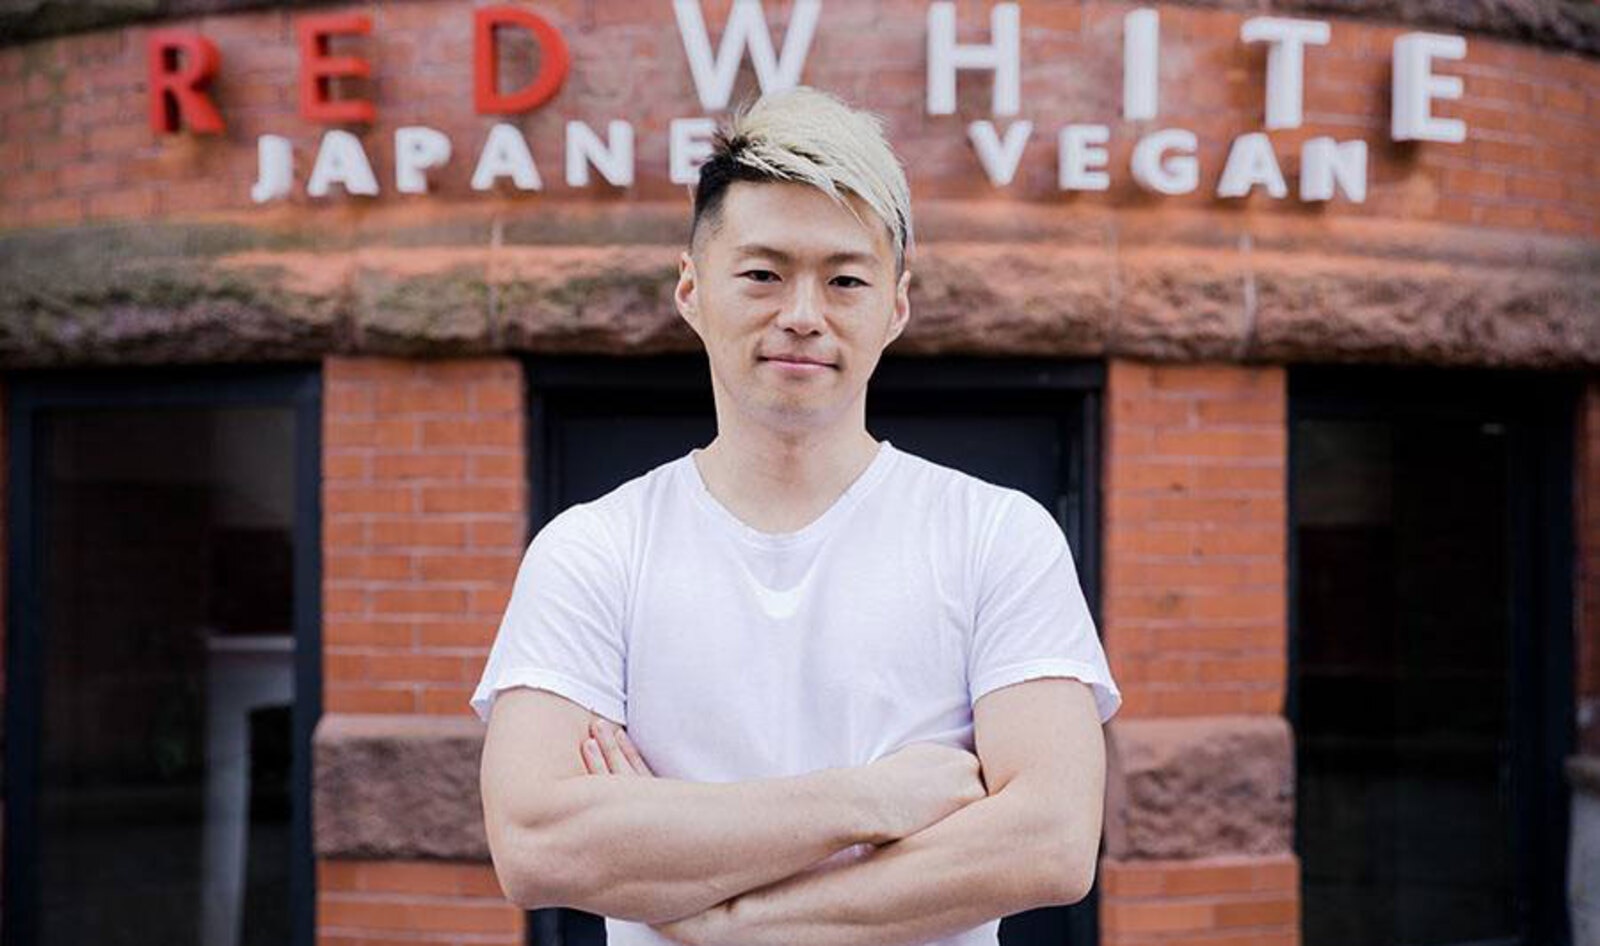 Japanese Restaurateur Opens Vegan Eatery in Boston